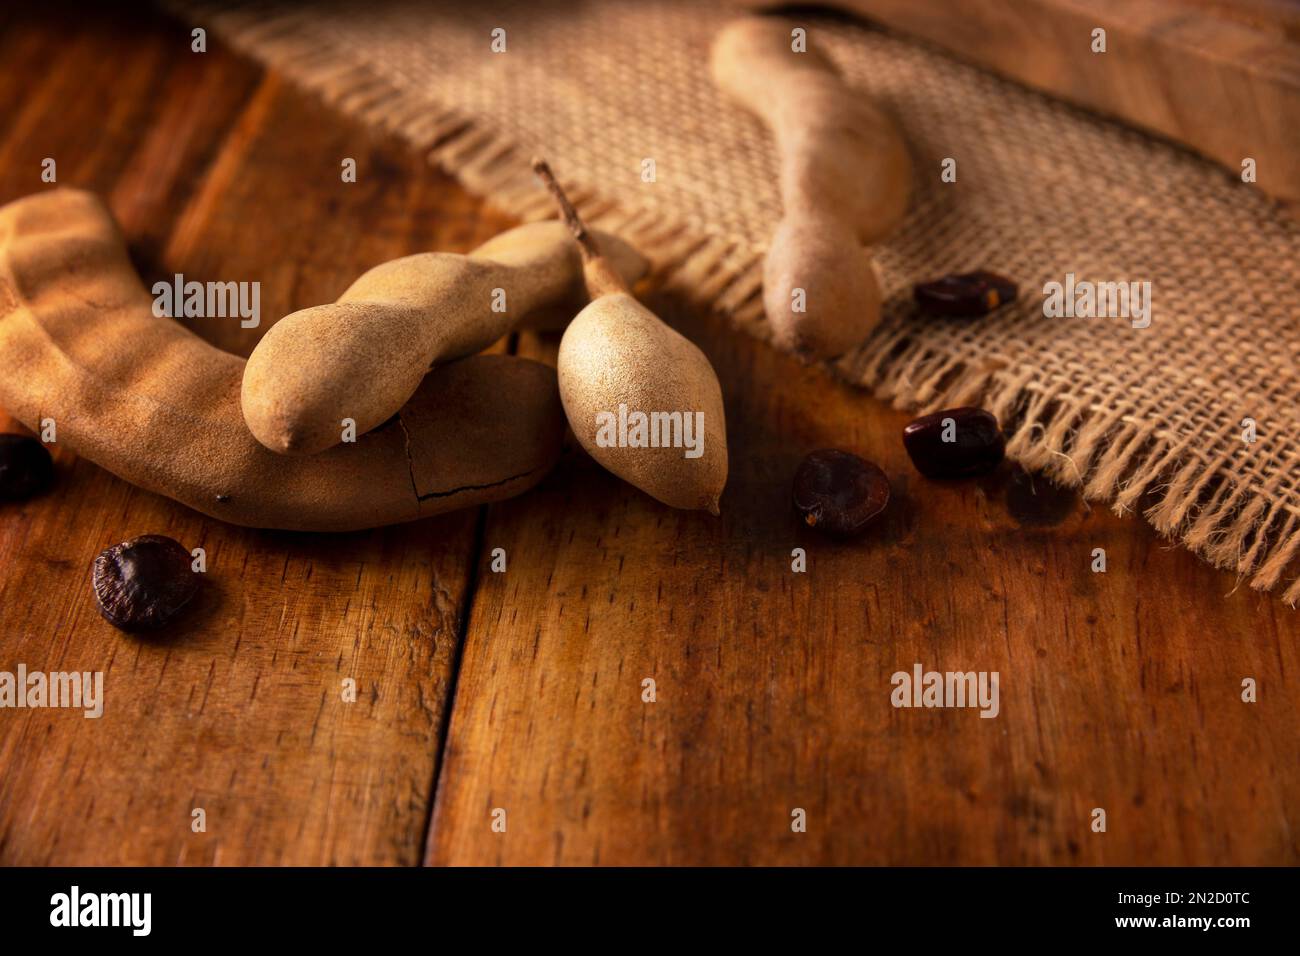 Tamarind frutta (Tamarindus indica) su tavola rustica di legno. Frutta tropicale molto apprezzata in molti paesi del mondo. Immagine di primo piano. Foto Stock